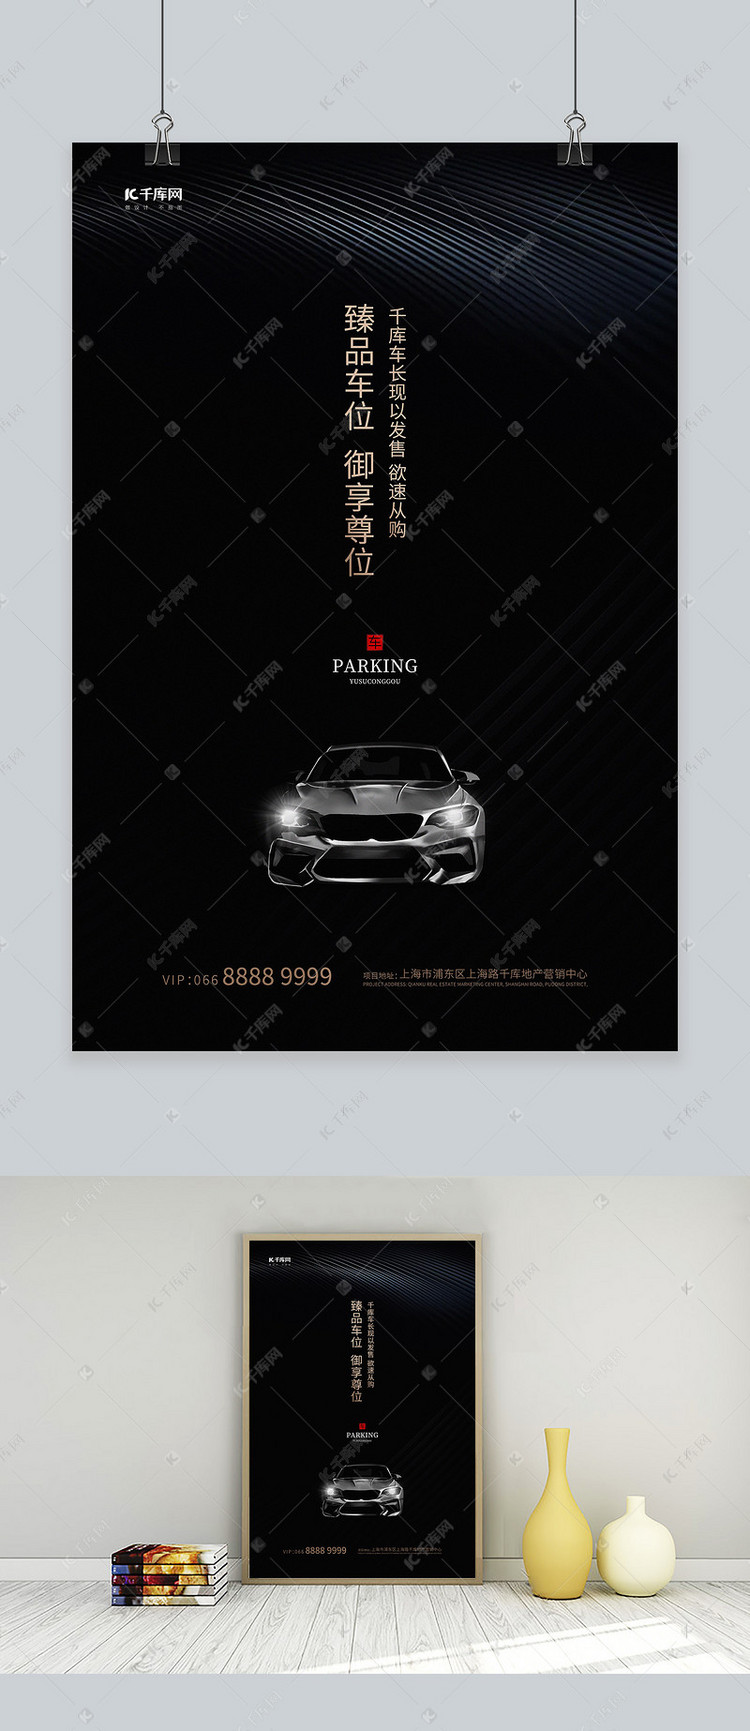 发布,千库海报模板频道为汽车配套服务汽车黑色高端创意海报模板提供